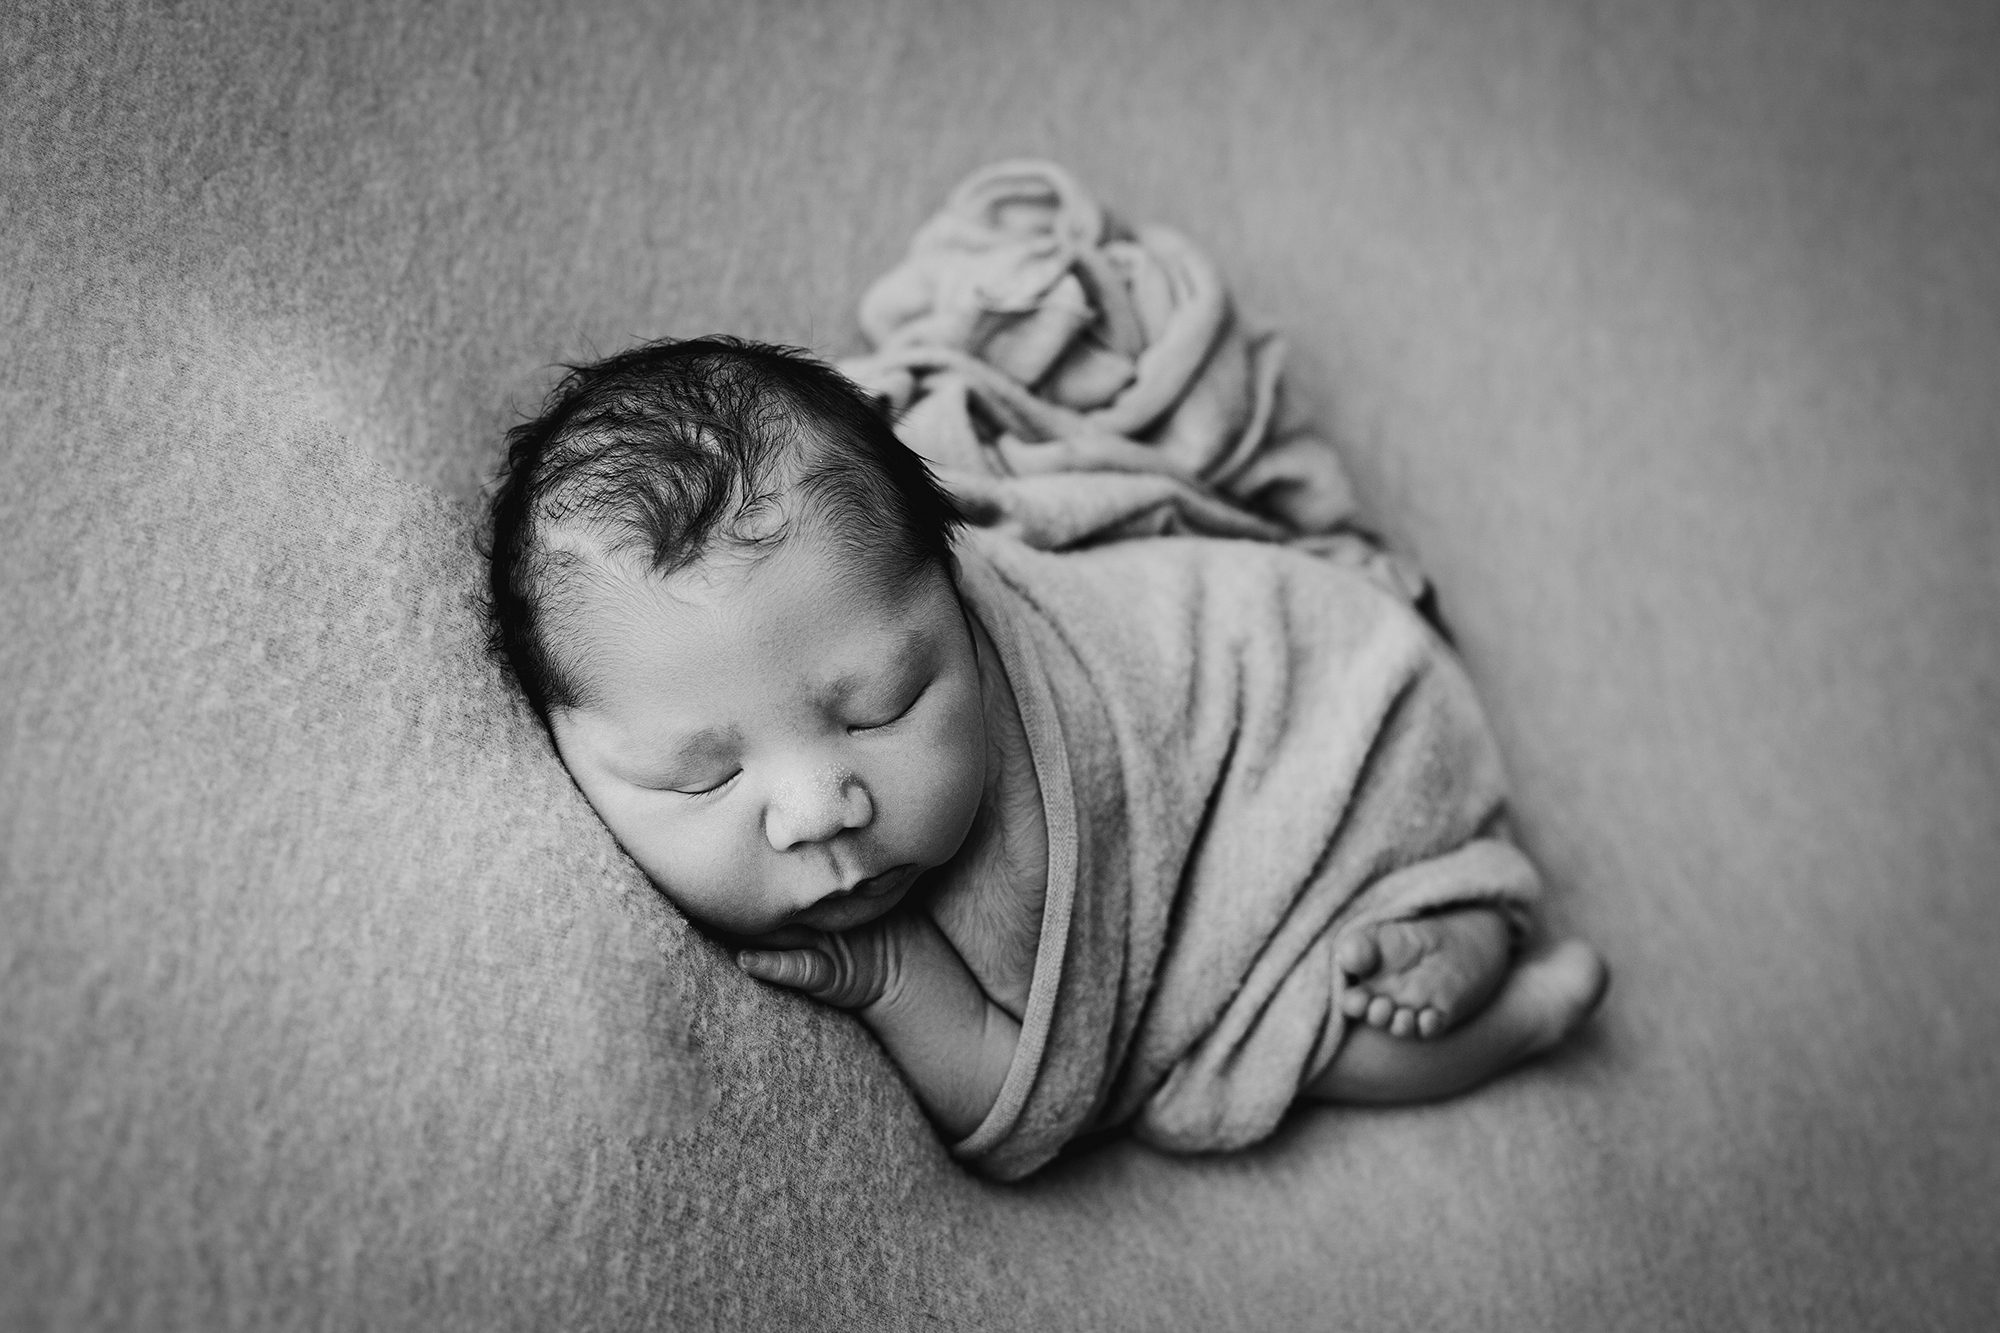 edmonton newborn photographers, edmonton newborn photographer